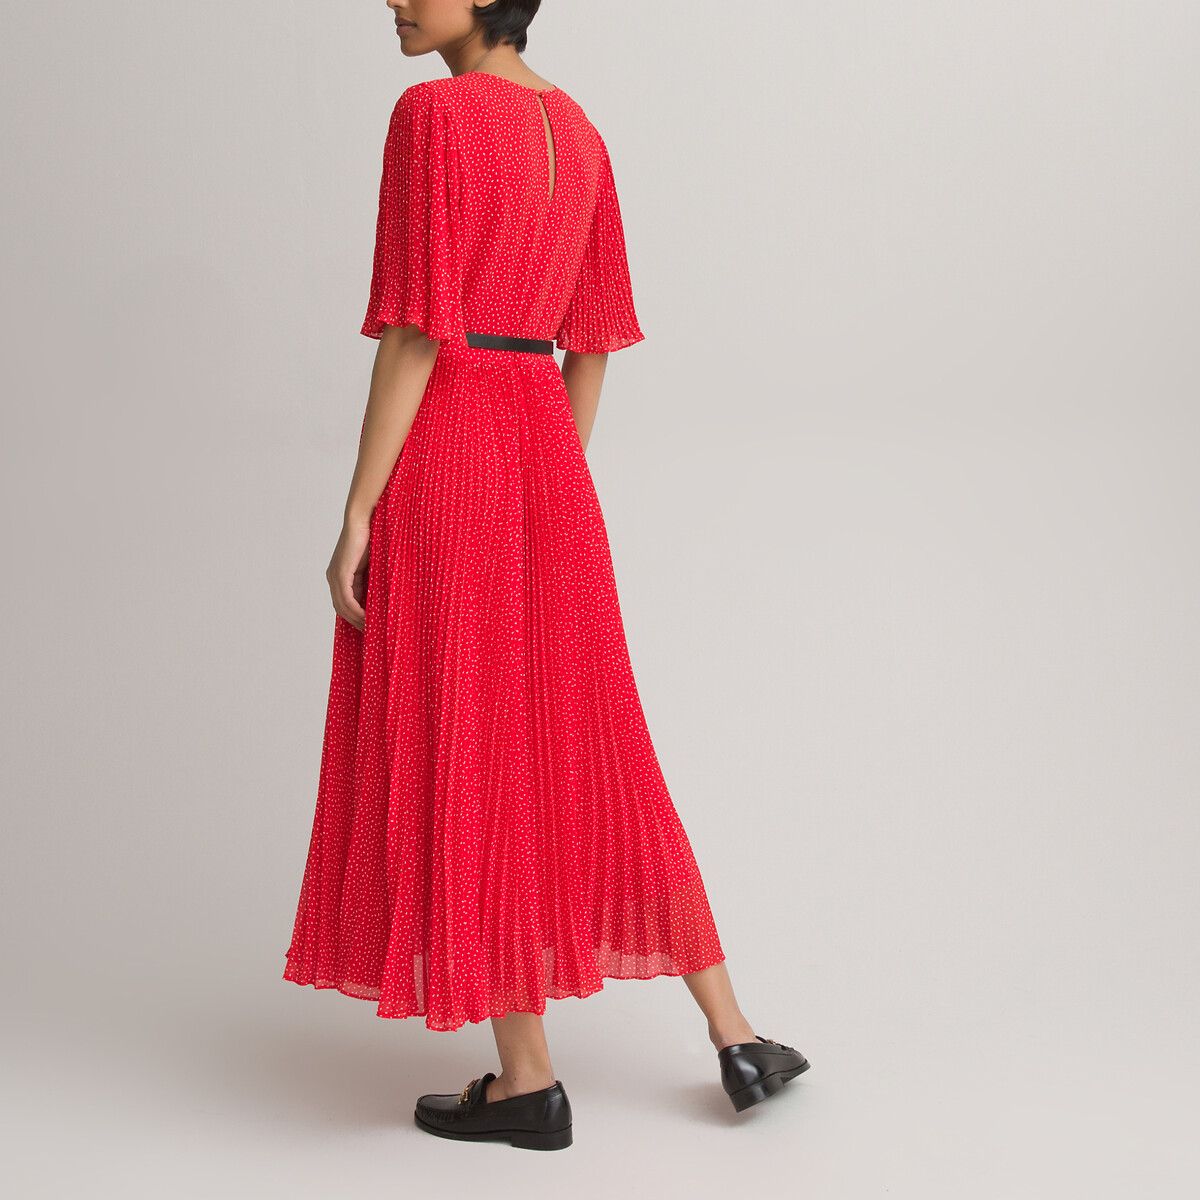 Платье LaRedoute С круглым вырезом и короткими рукавами с принтом 50 красный, размер 50 - фото 4